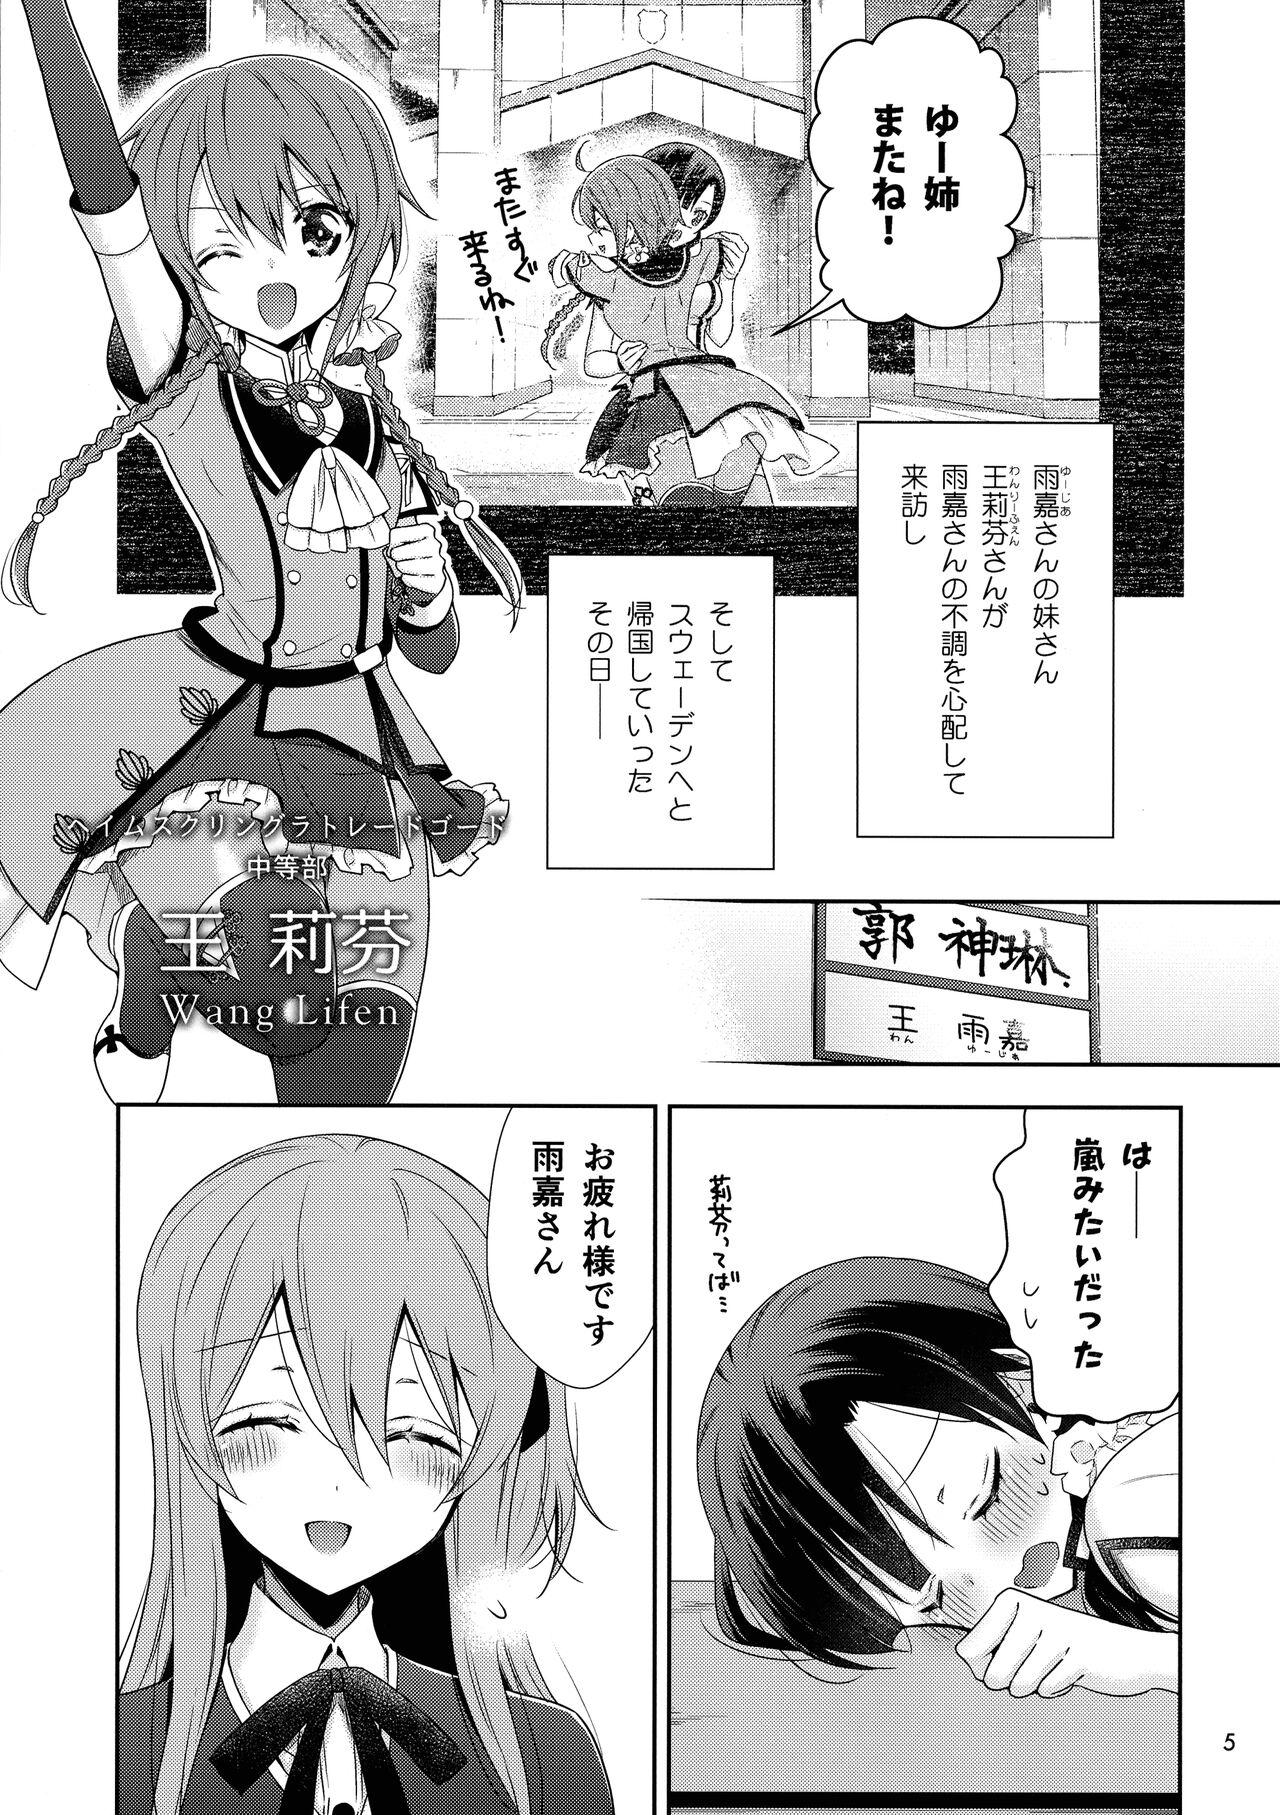 Loira Kami Rin ga ame Yoshimi ni Yaki Mochi o Yaku Hanashi - Assault lily Facebook - Page 5